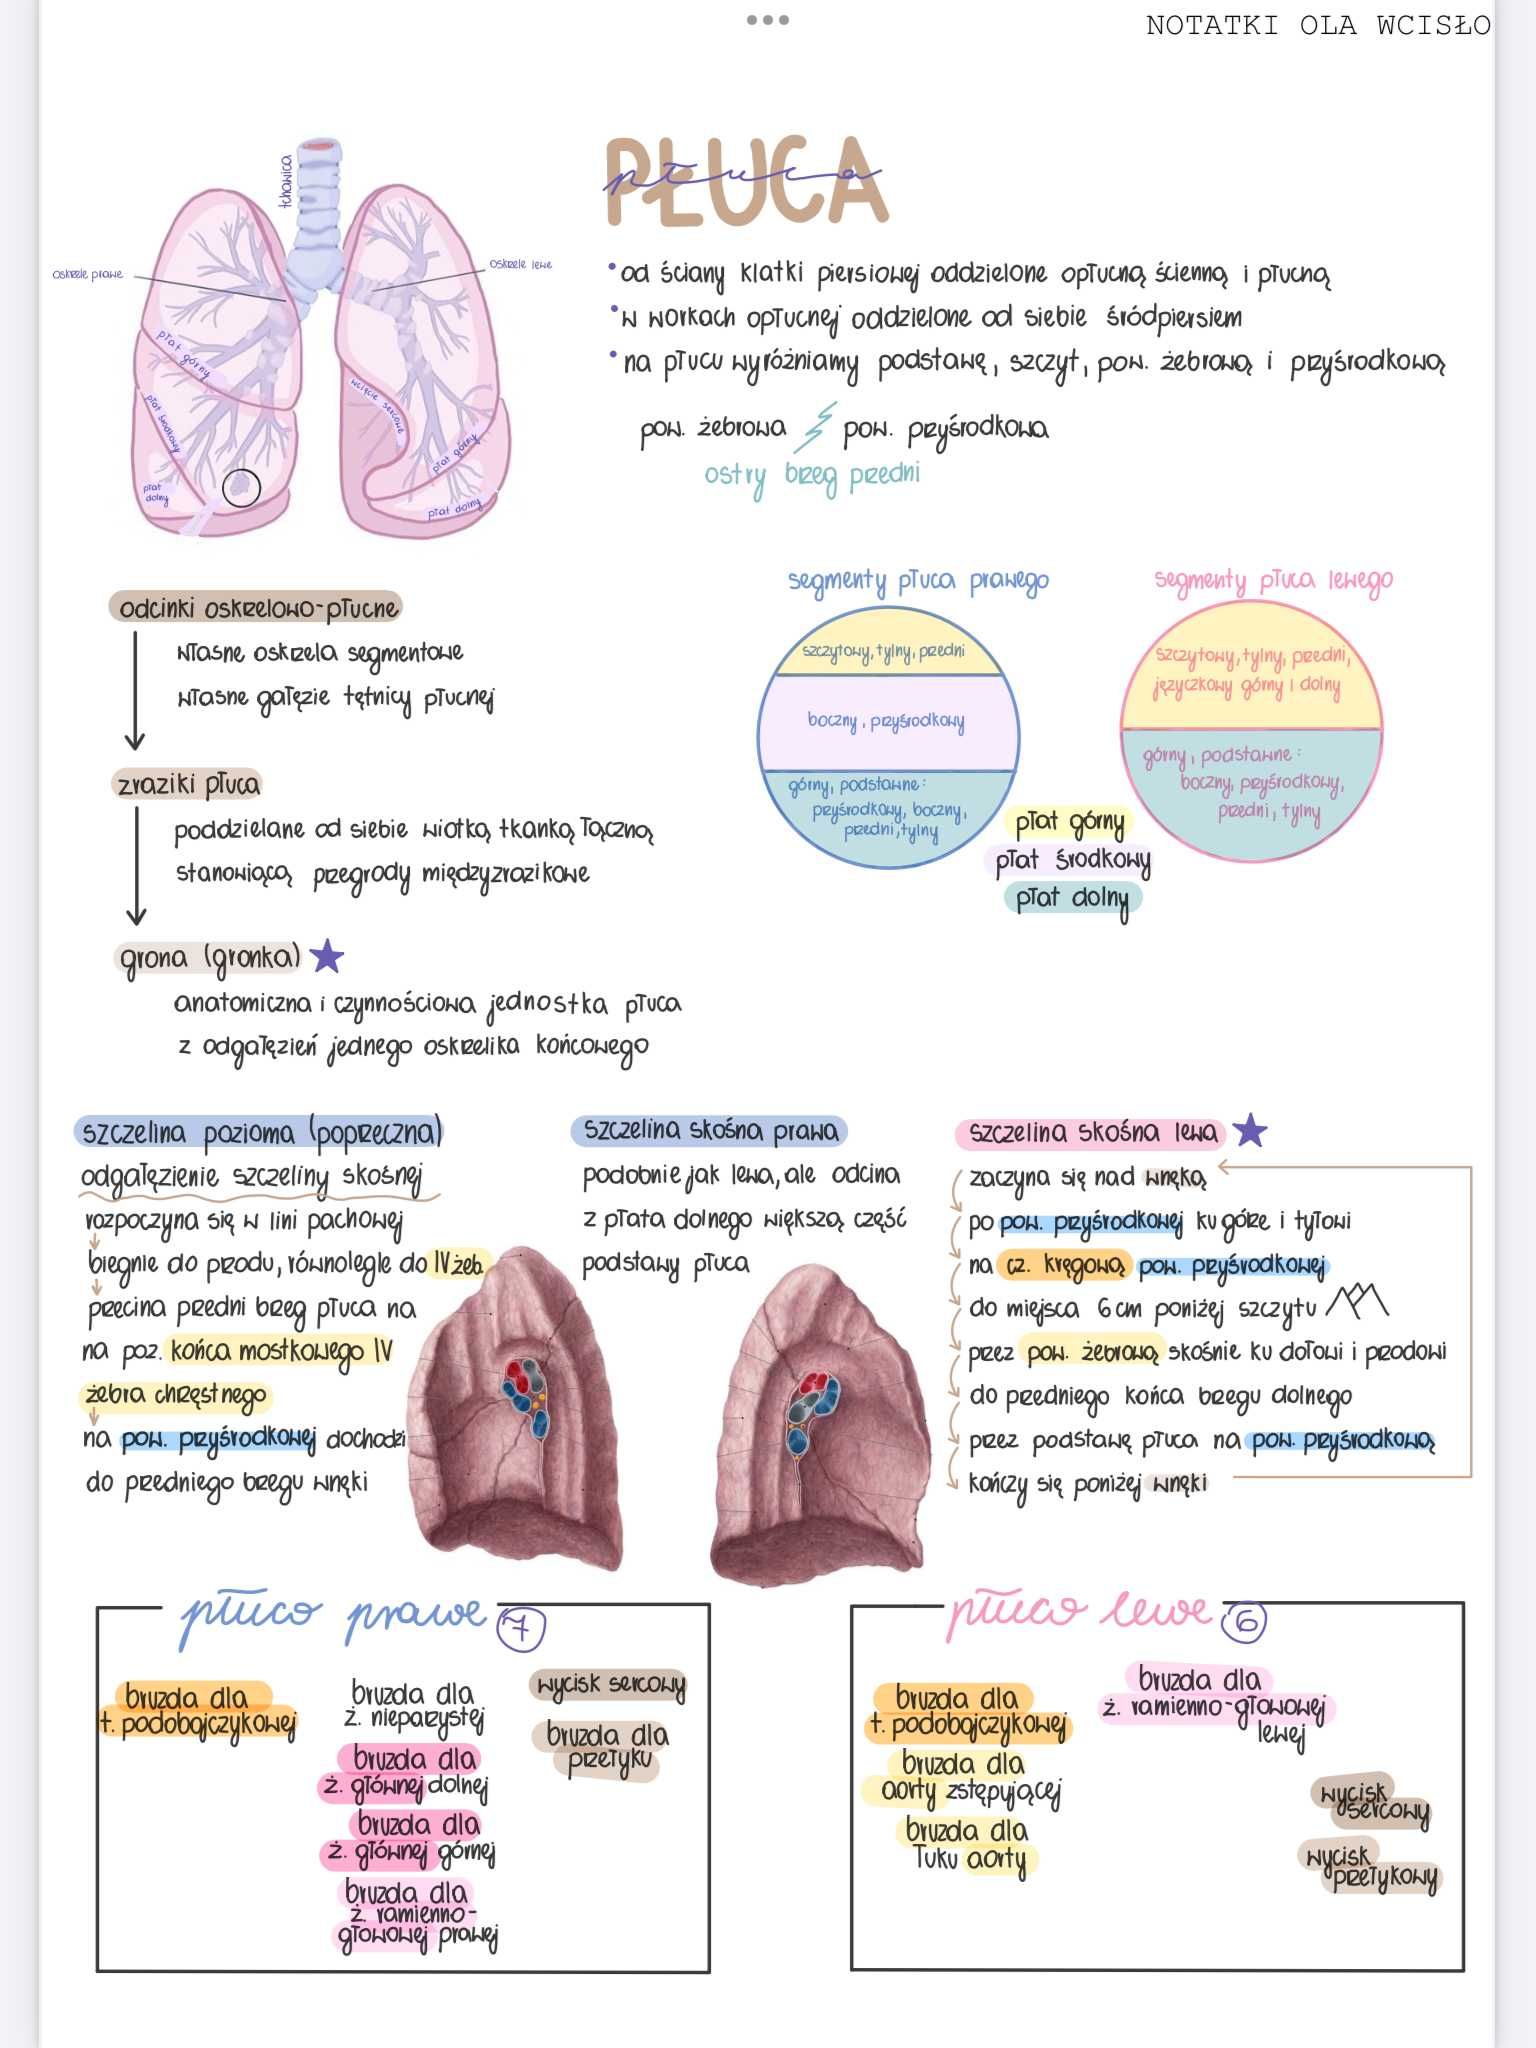 Notatki z anatomii - 1 rok lekarski/lekarsko-dentystyczny PUM